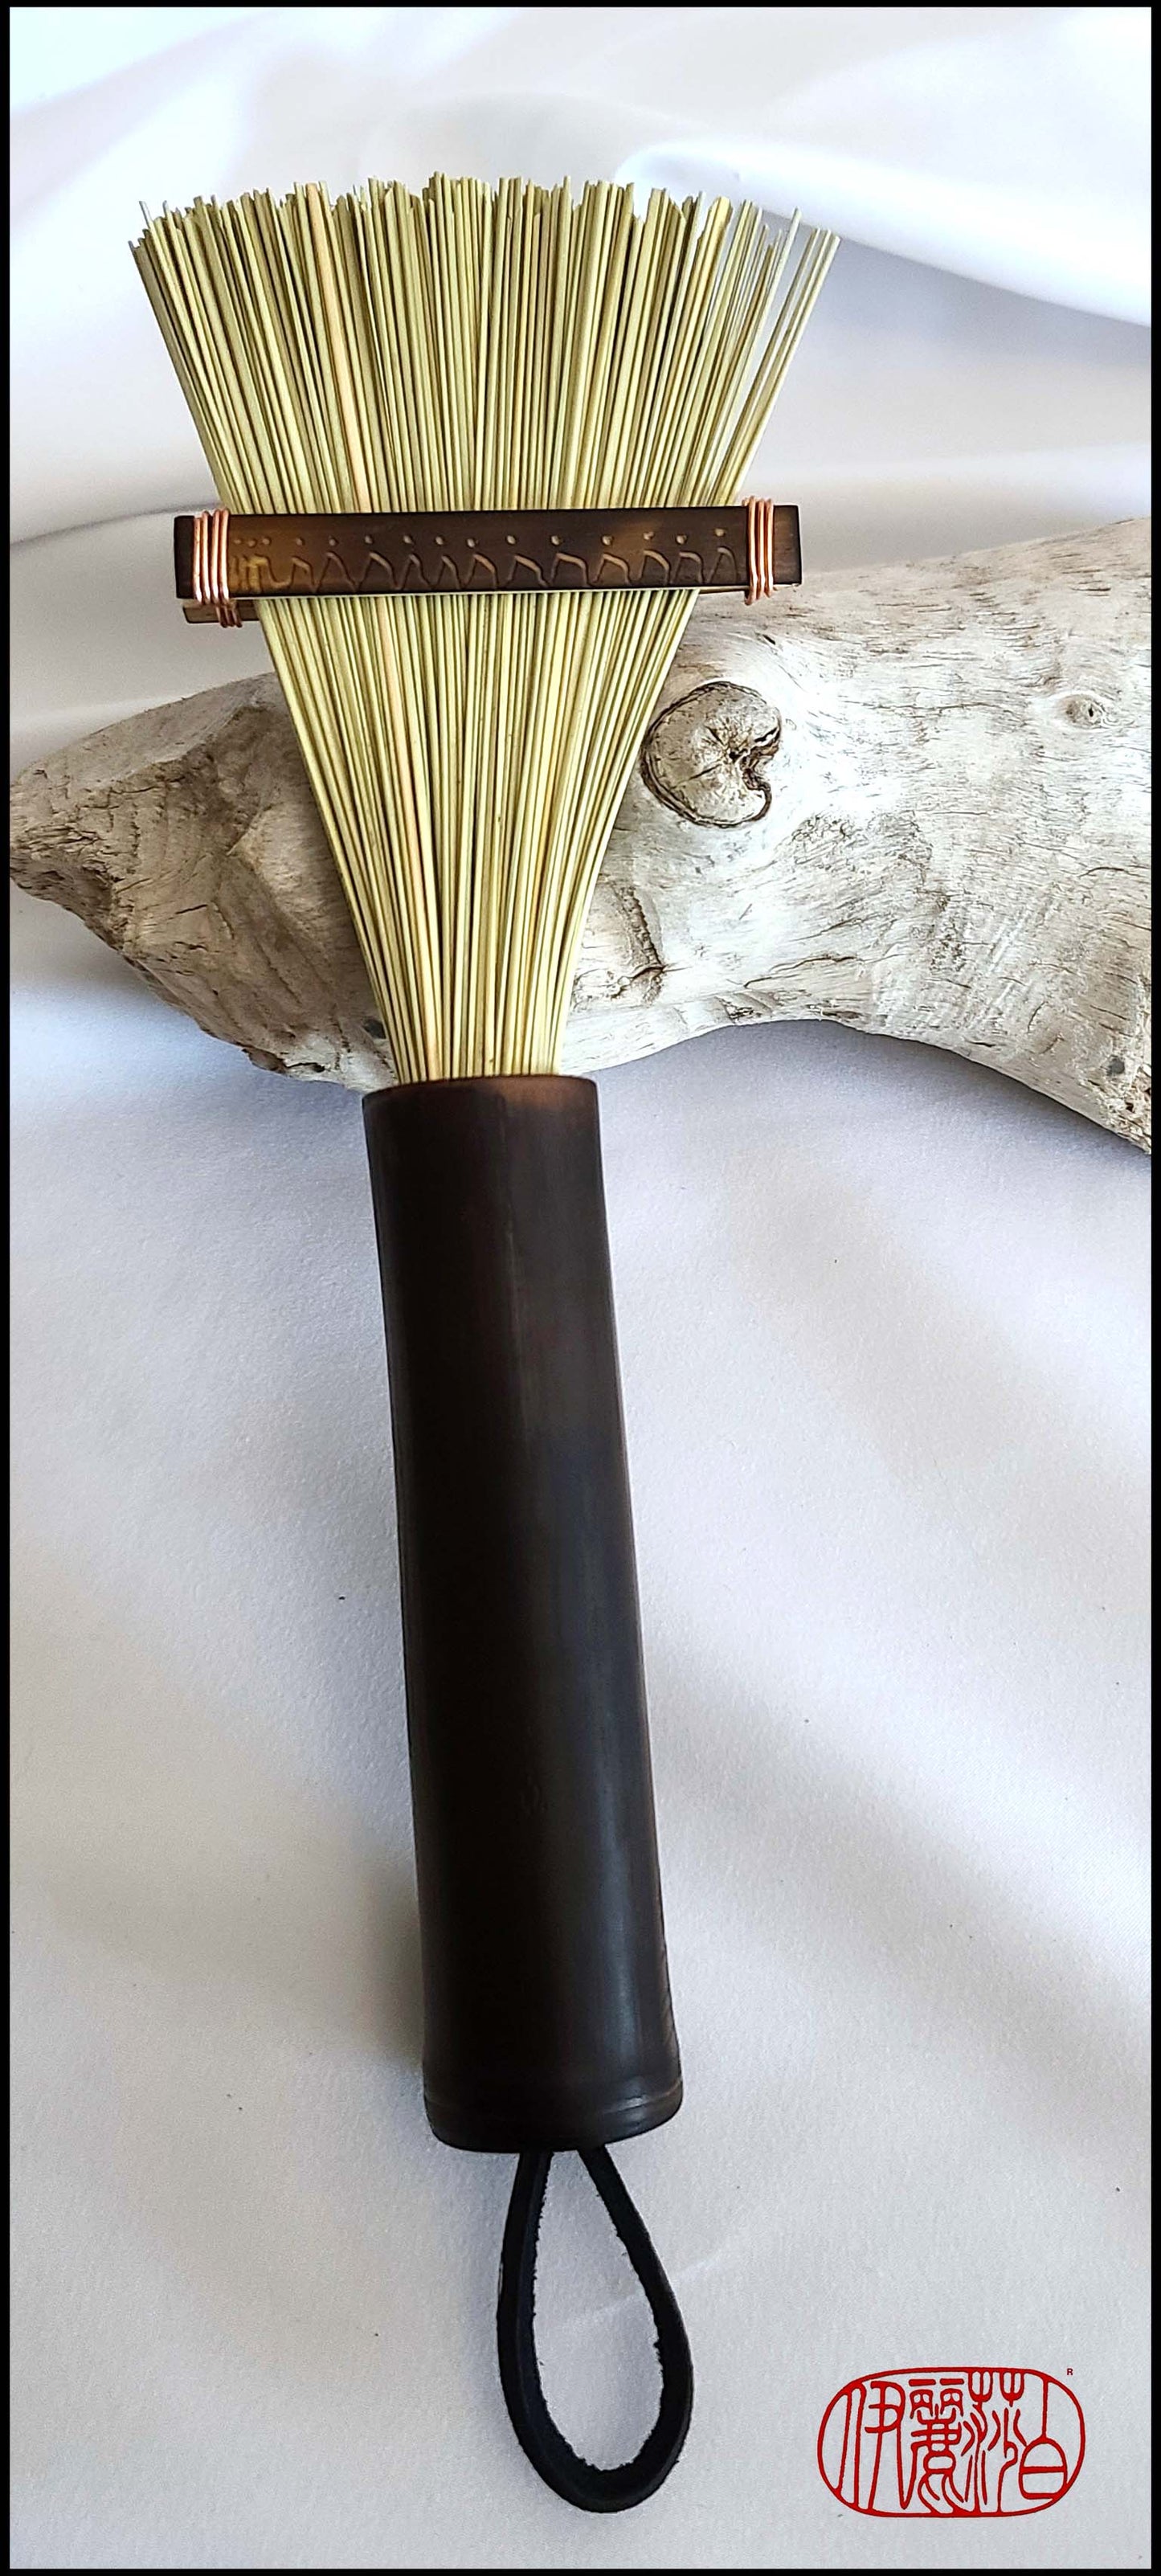 Medium Fan Fiber Brush for Cold Wax Art Supplies Elizabeth Schowachert Art